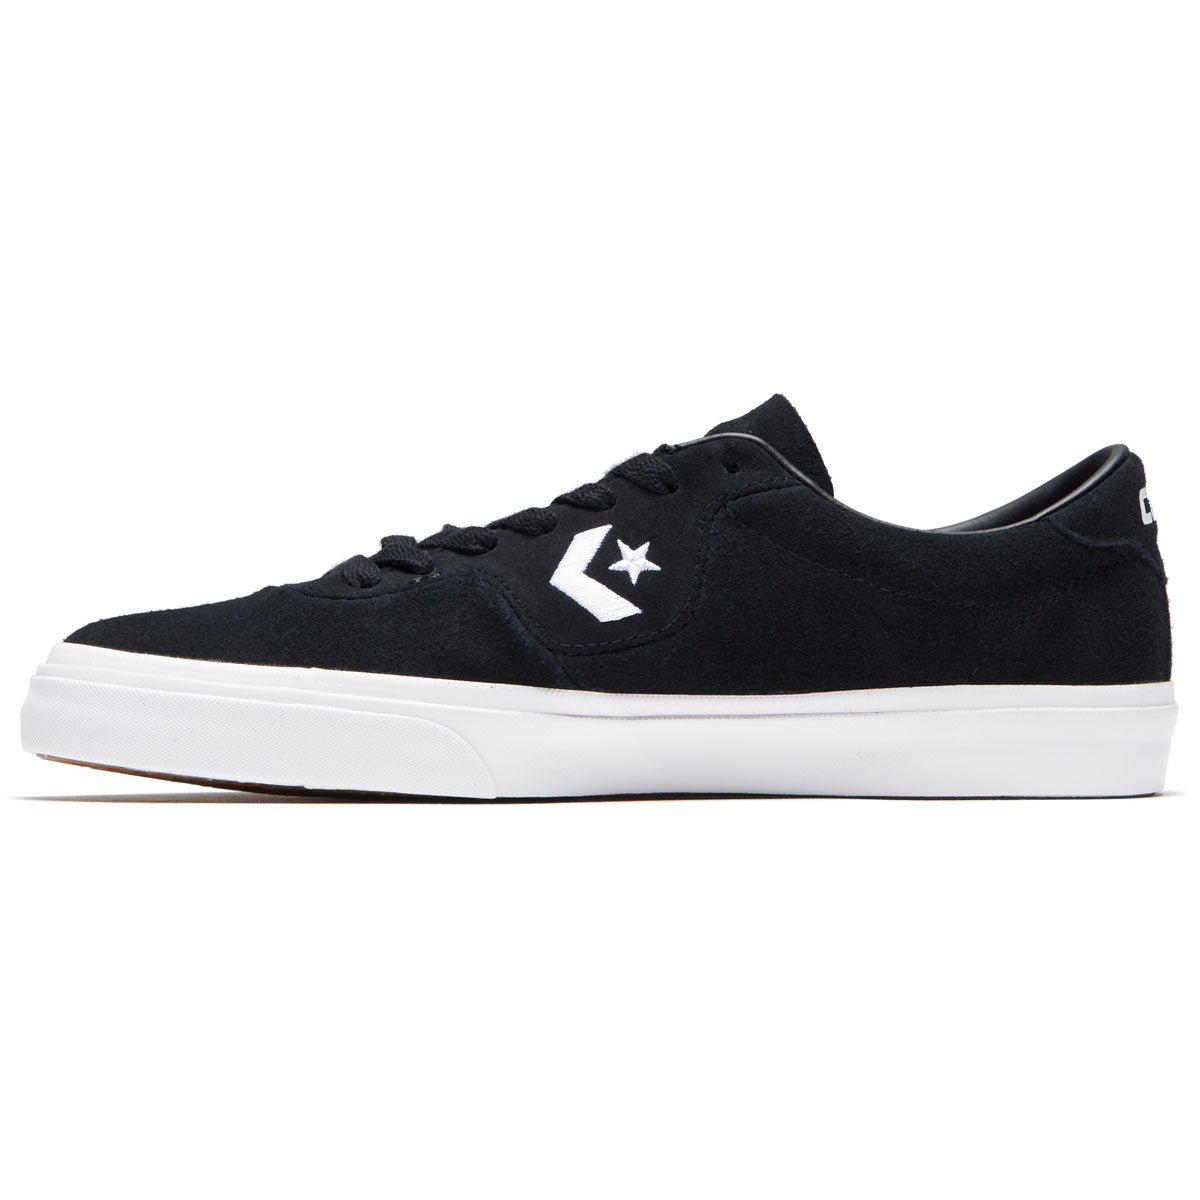 Converse Louie Lopez Pro Shoes - Black/Black/White image 2